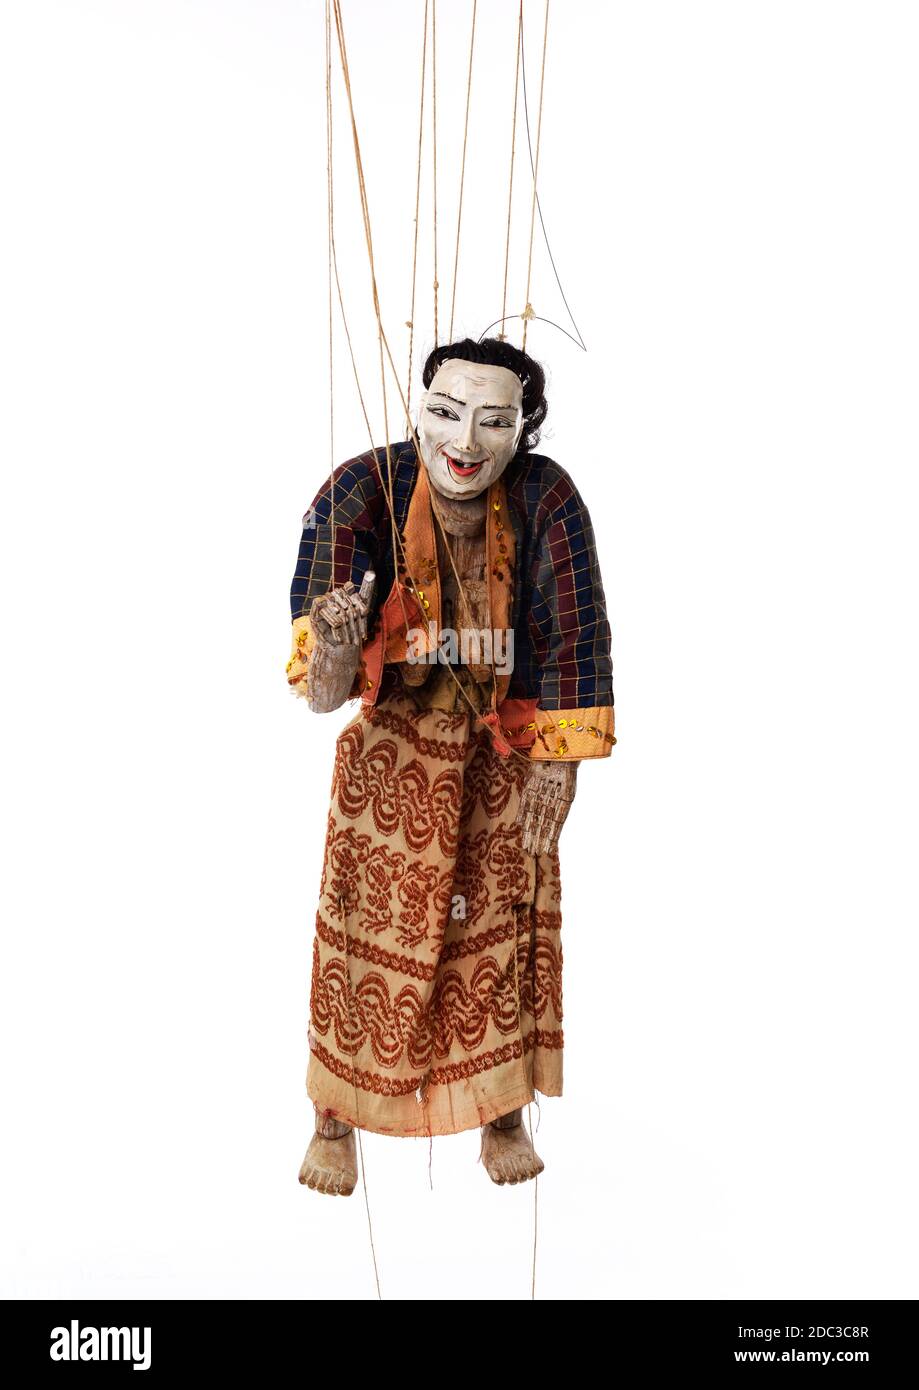 Suspendido por hilos de marionetas de madera asiática antigua que  representa a las mujeres. Ella está vestida con ropa tradicional. Foto de  estudio, fondo blanco Fotografía de stock - Alamy